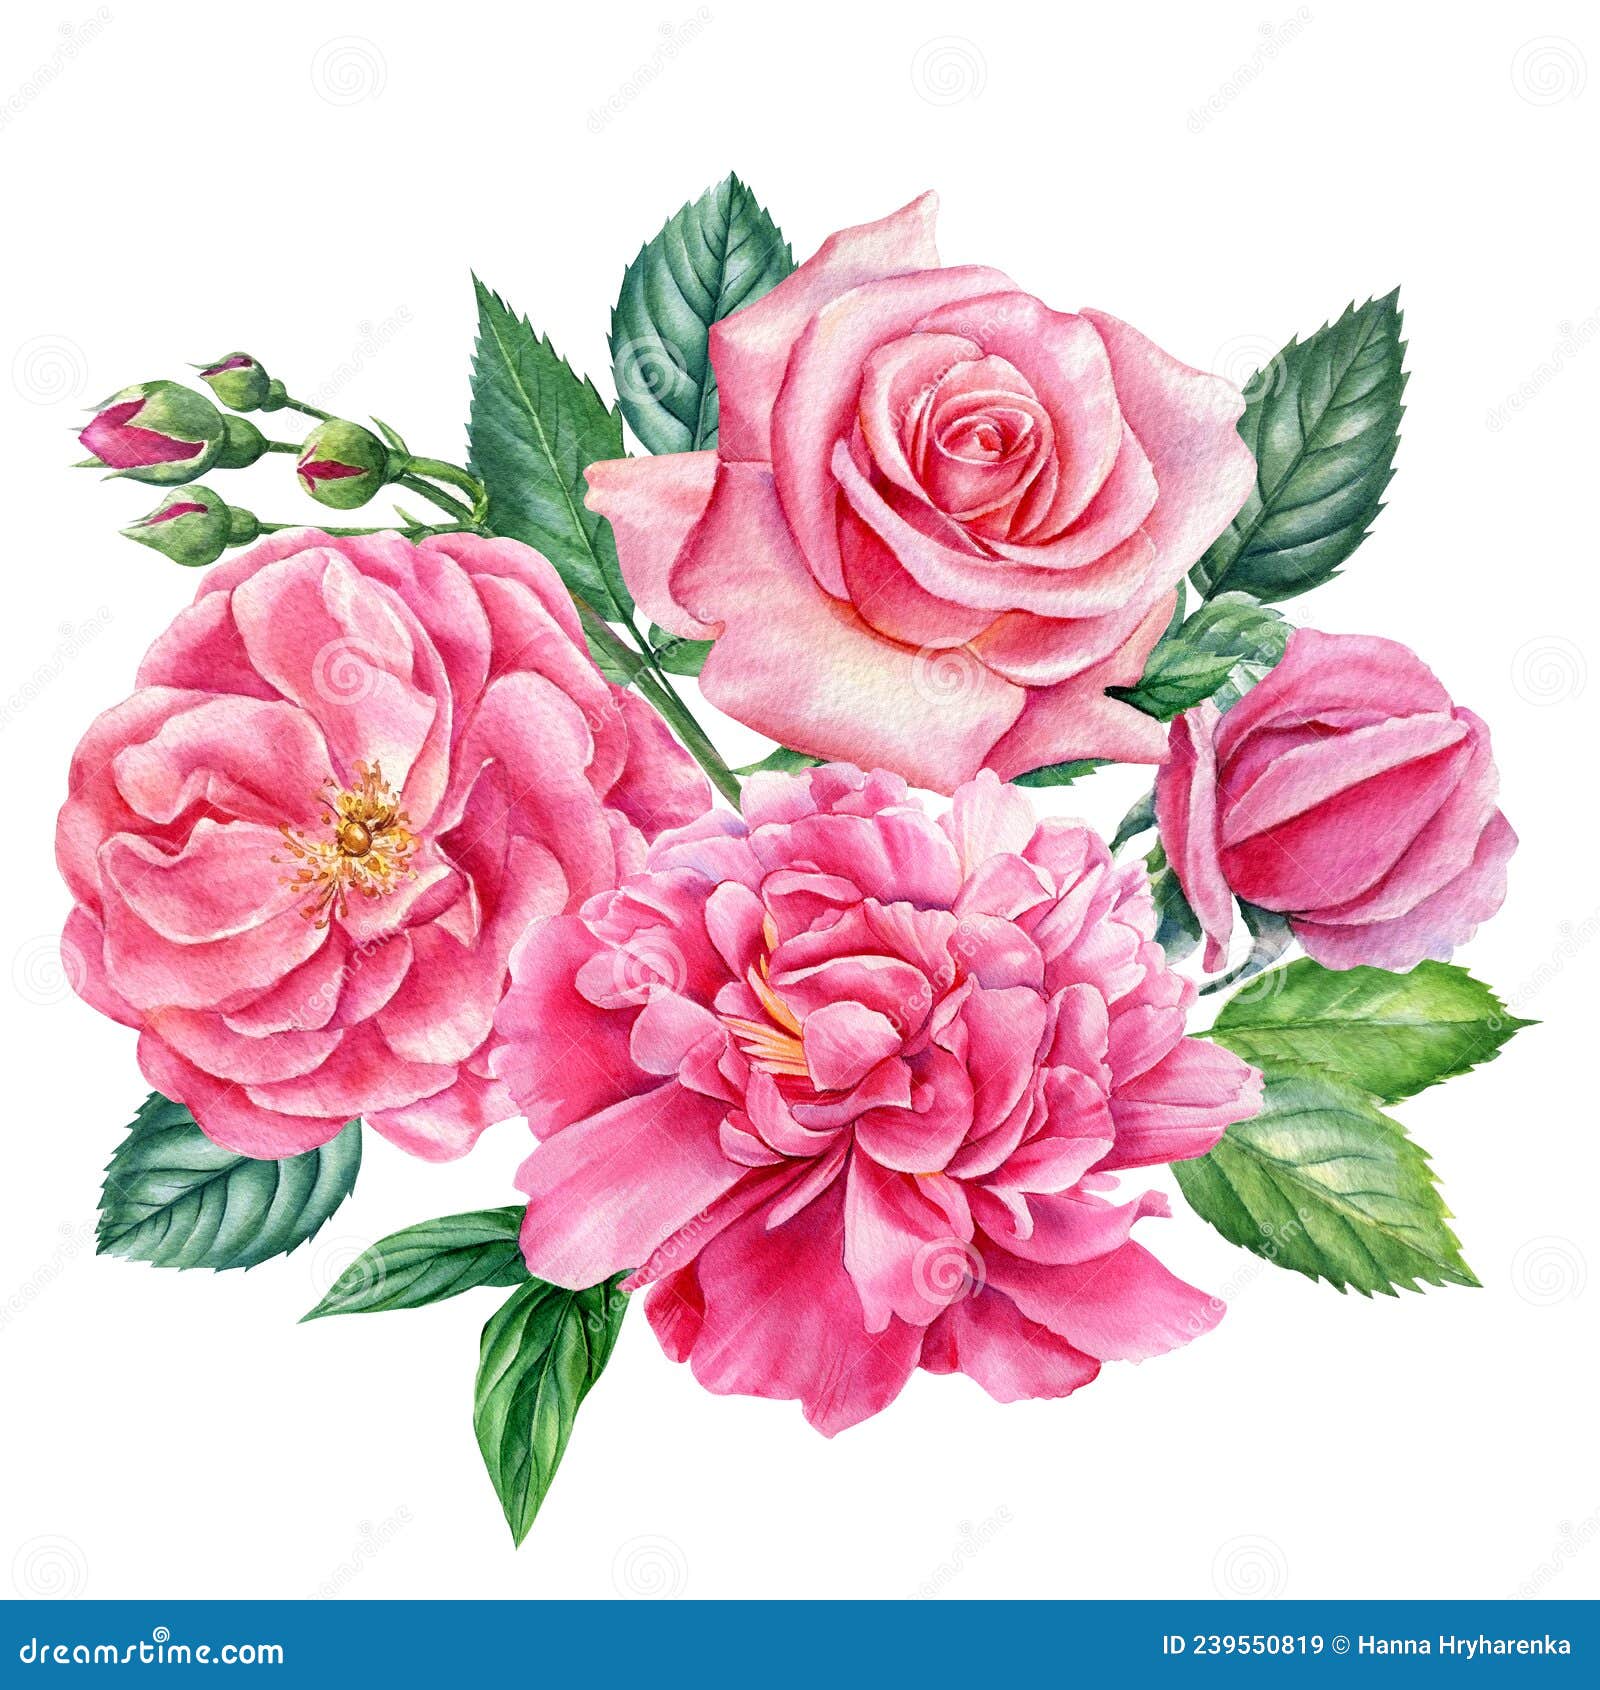 Acuarelas Ilustrativas De Flores De Rosa Y Peonía. Floral Vintage Stock de  ilustración - Ilustración de flores, travieso: 239550819